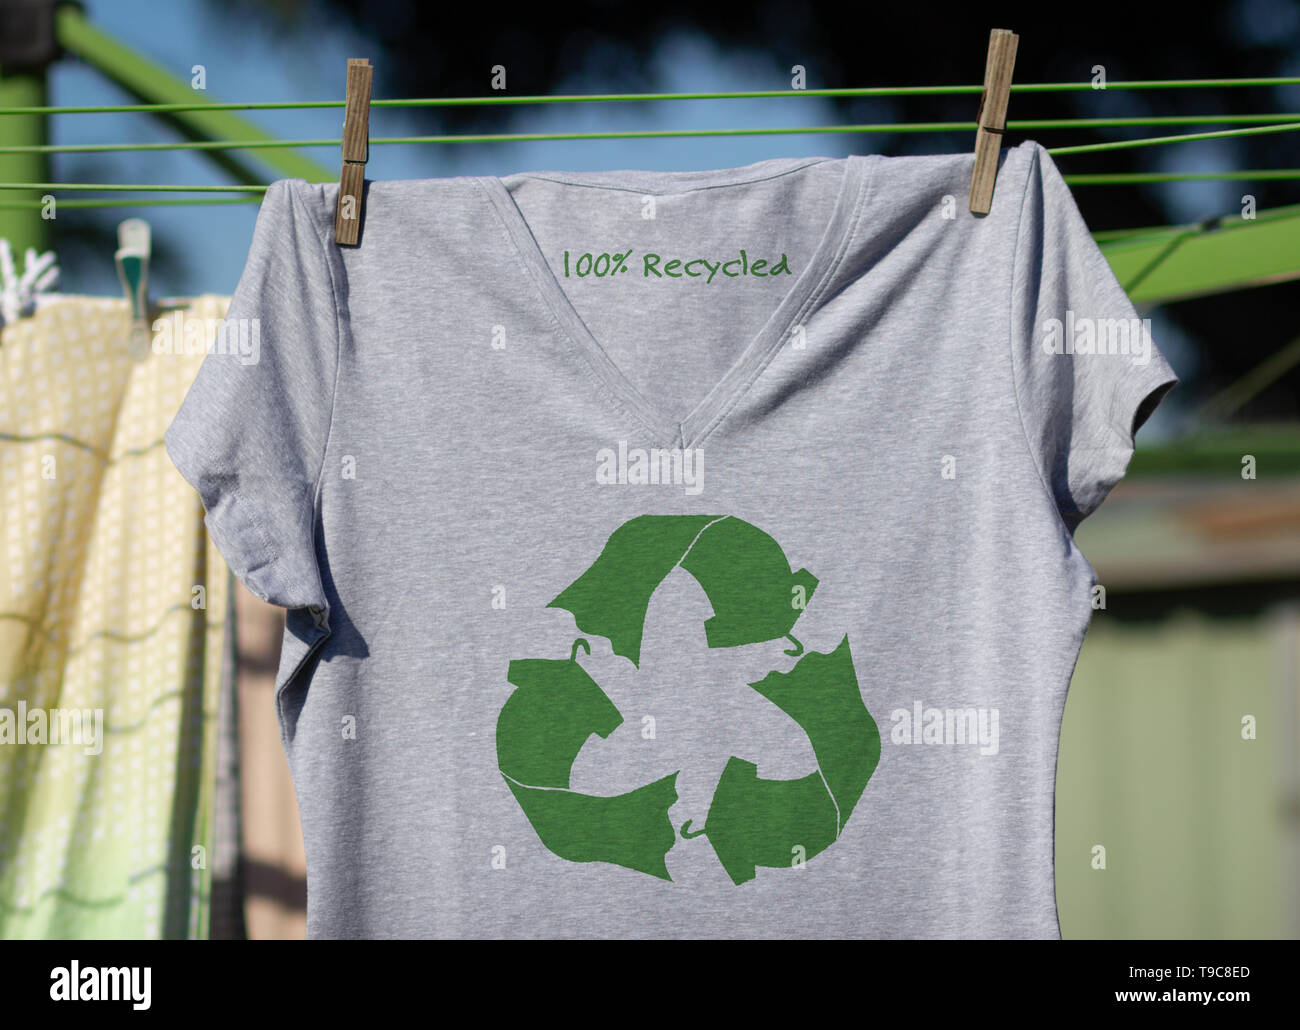 Auf das Symbol Papierkorb Kleidung t-shirt mit 100 % recycelten Text, nachhaltige Mode wiederverwenden, recyceln Kleidung und Textilien, um Abfall zu reduzieren, Stockfoto